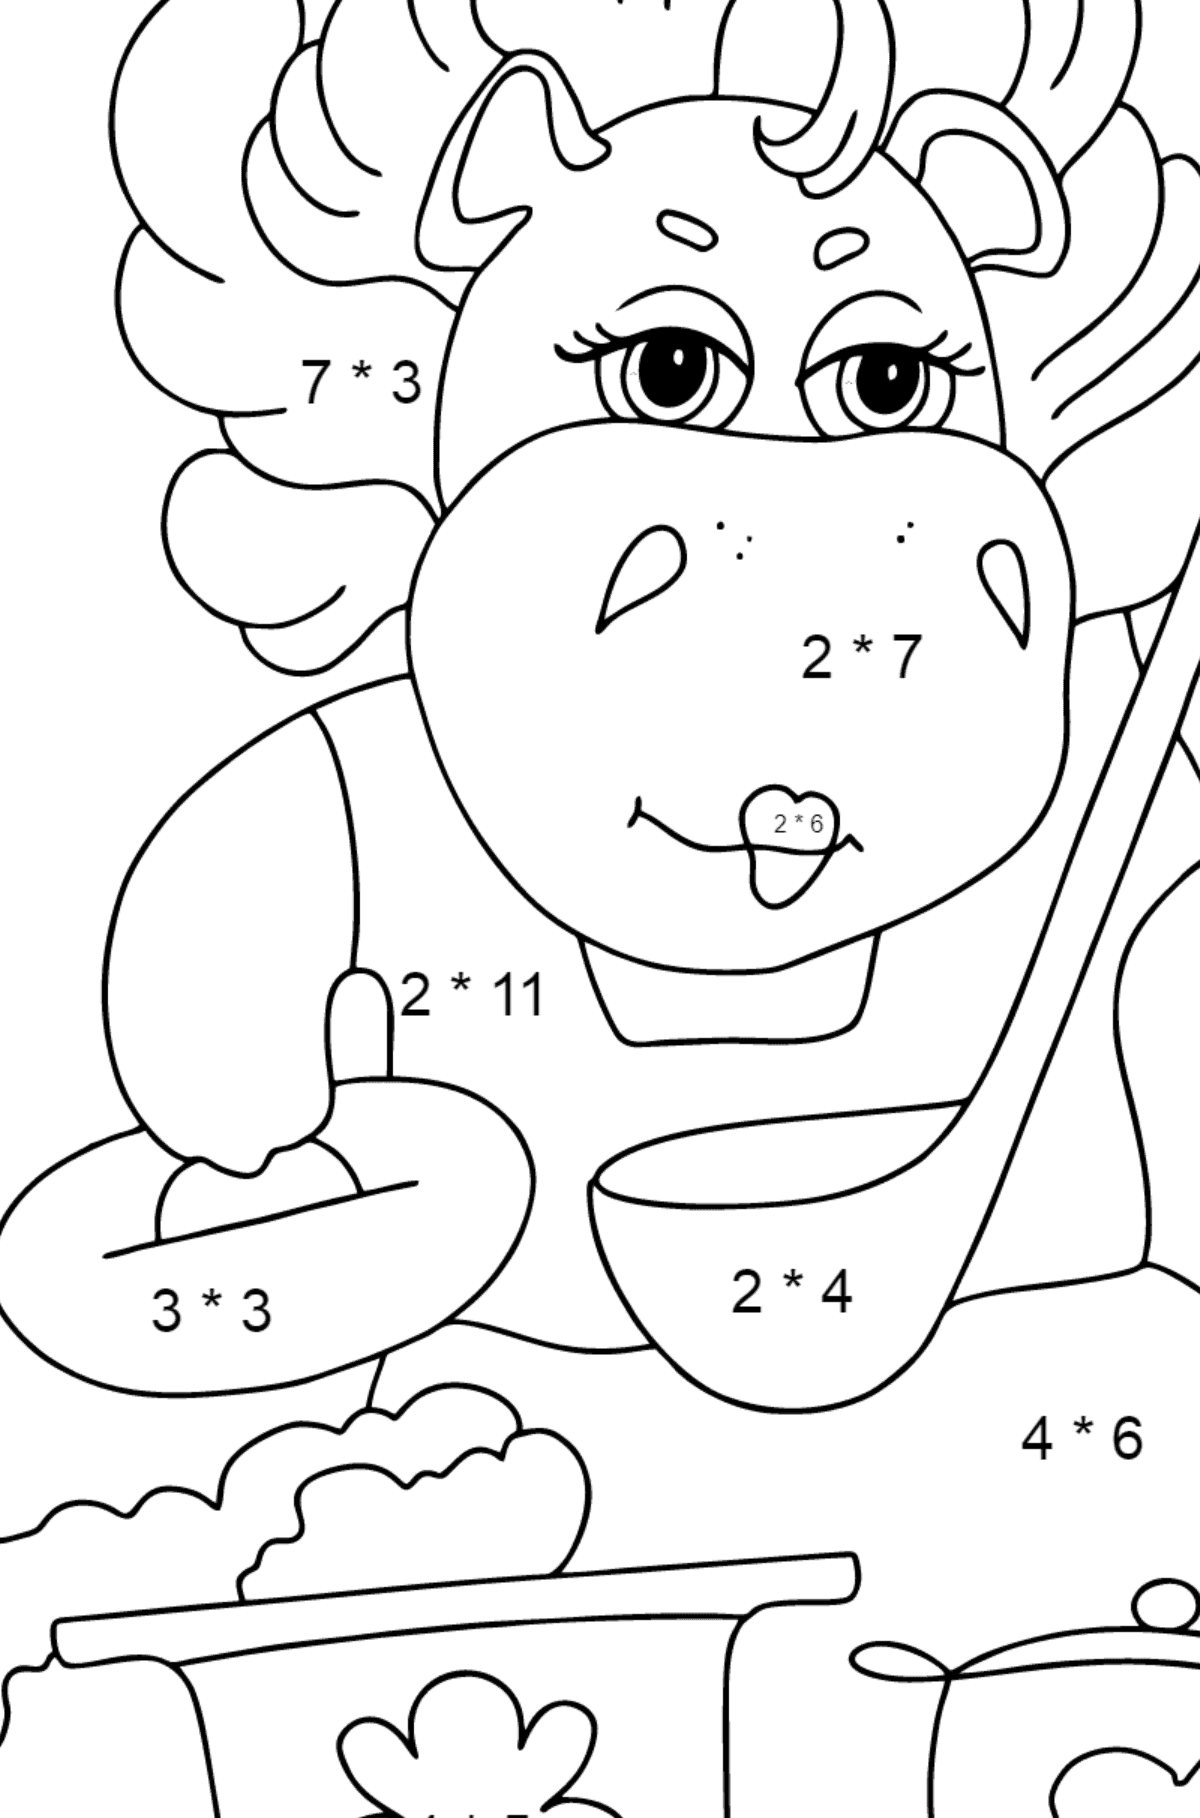 Dibujo de hipopótamo mágico (simple) para colorear - Colorear con Matemáticas - Multiplicaciones para Niños